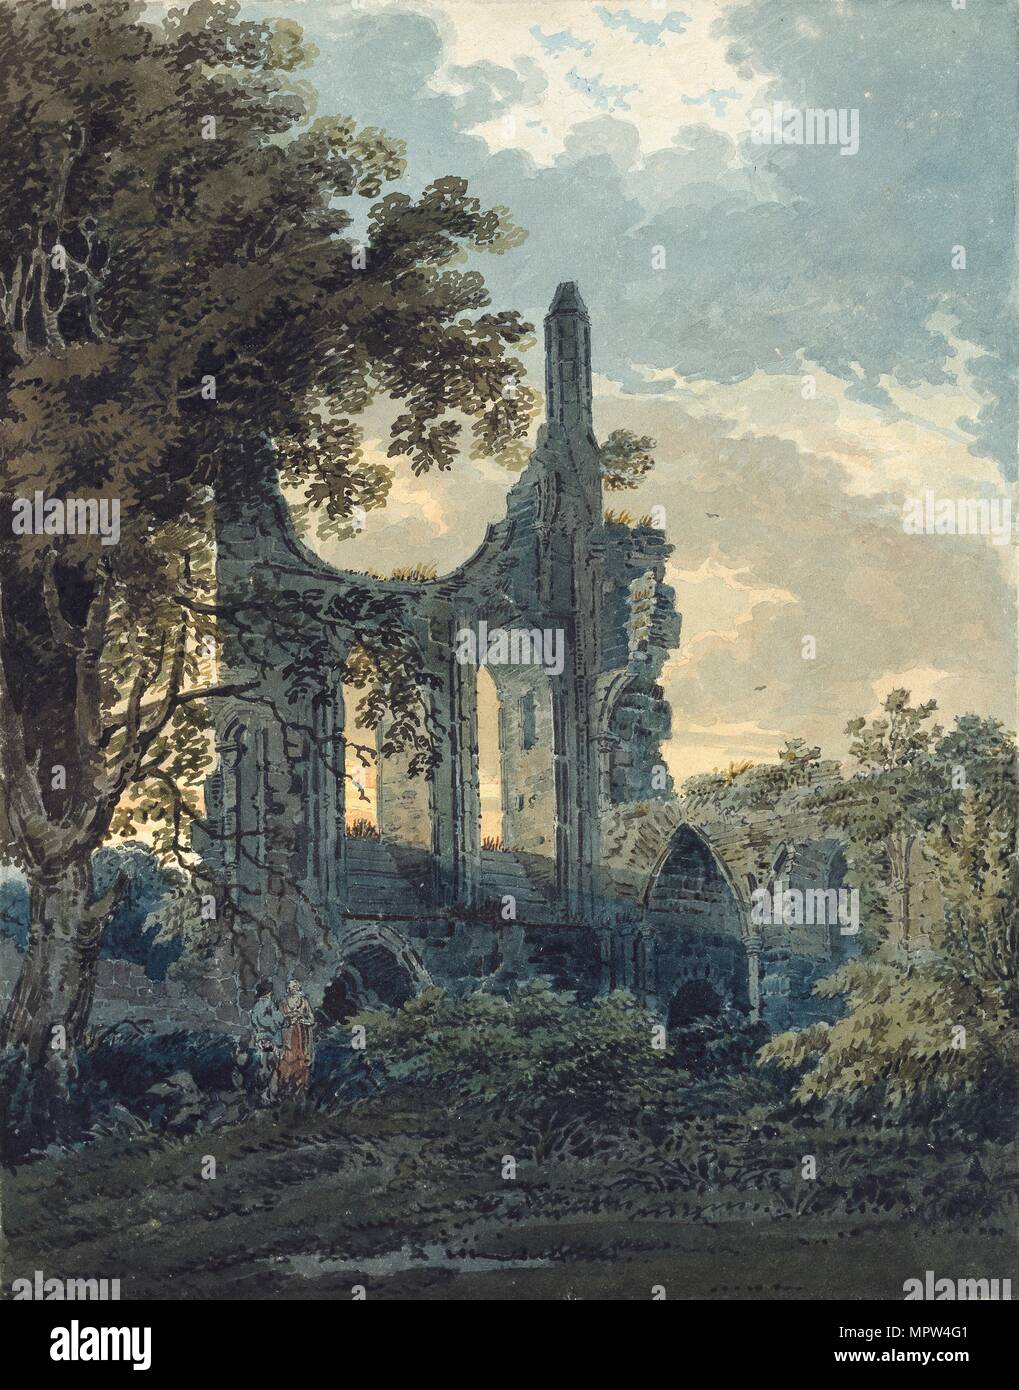 Byland Abbey, Yorkshire, c1793. Artist: Thomas Girtin. Stock Photo